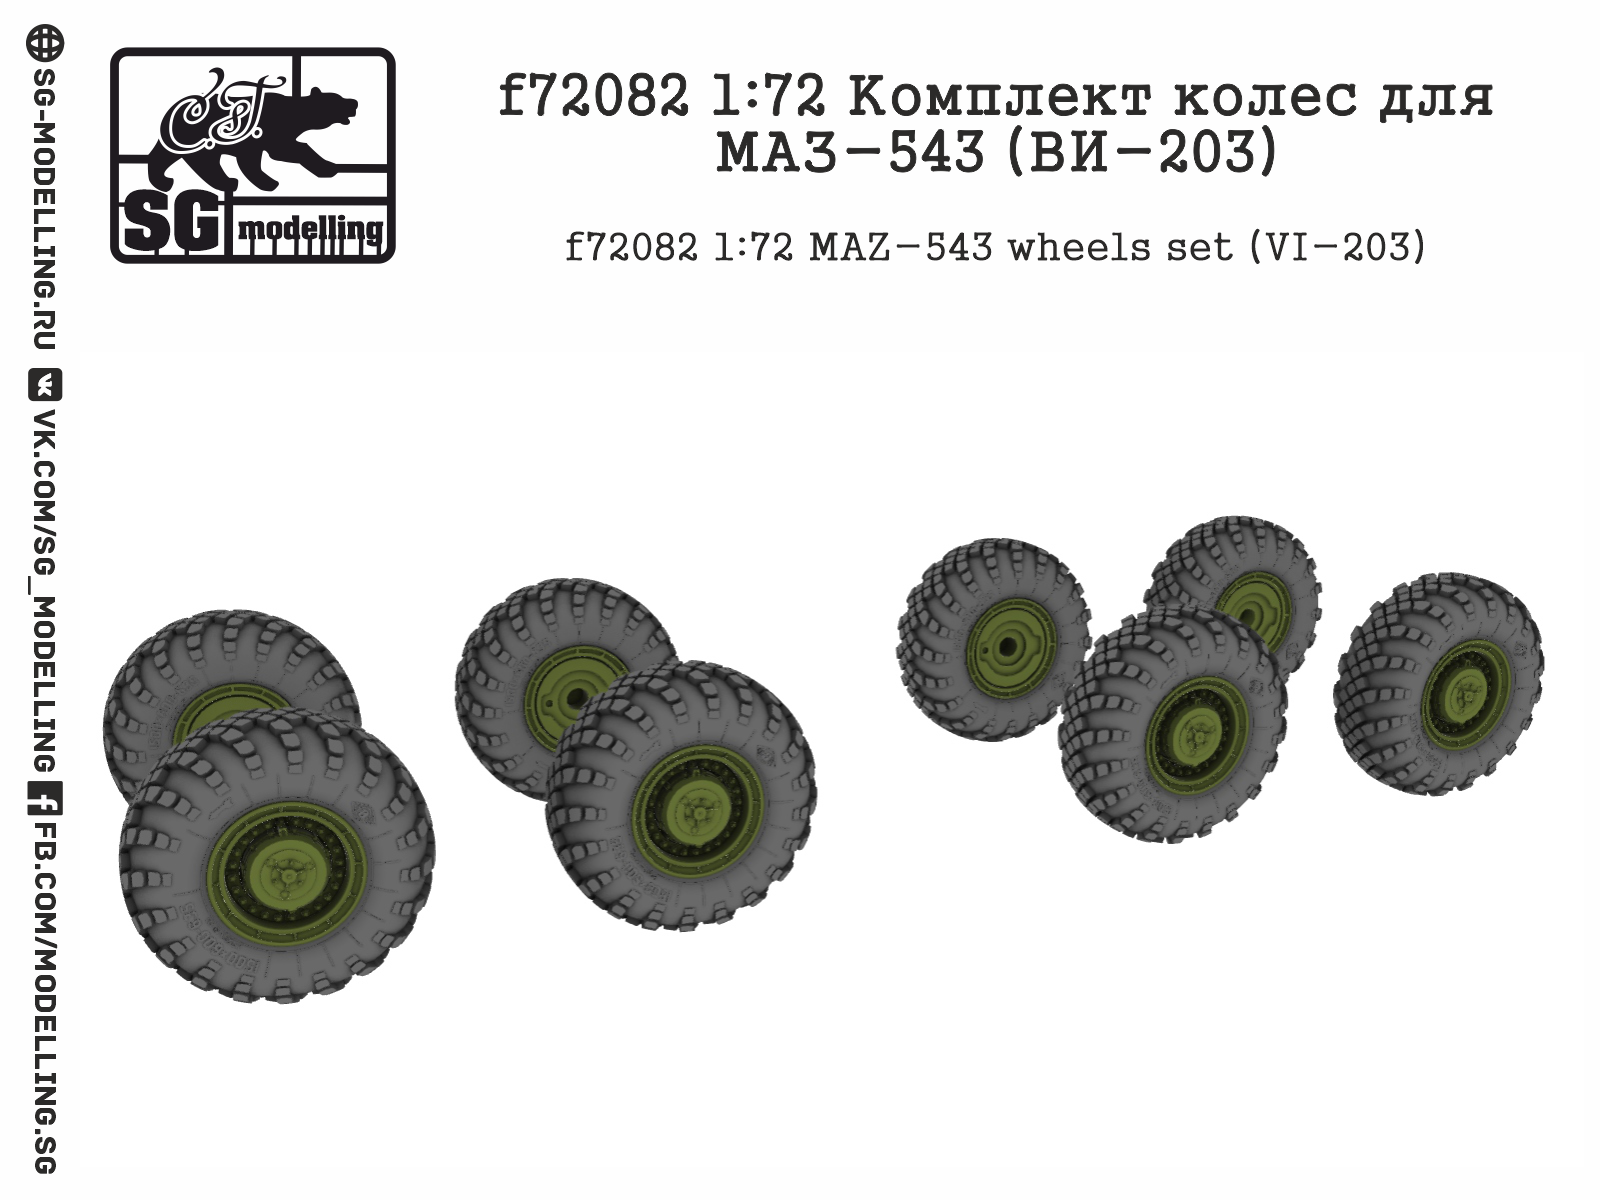 MAZ-543 VI-203 wheels